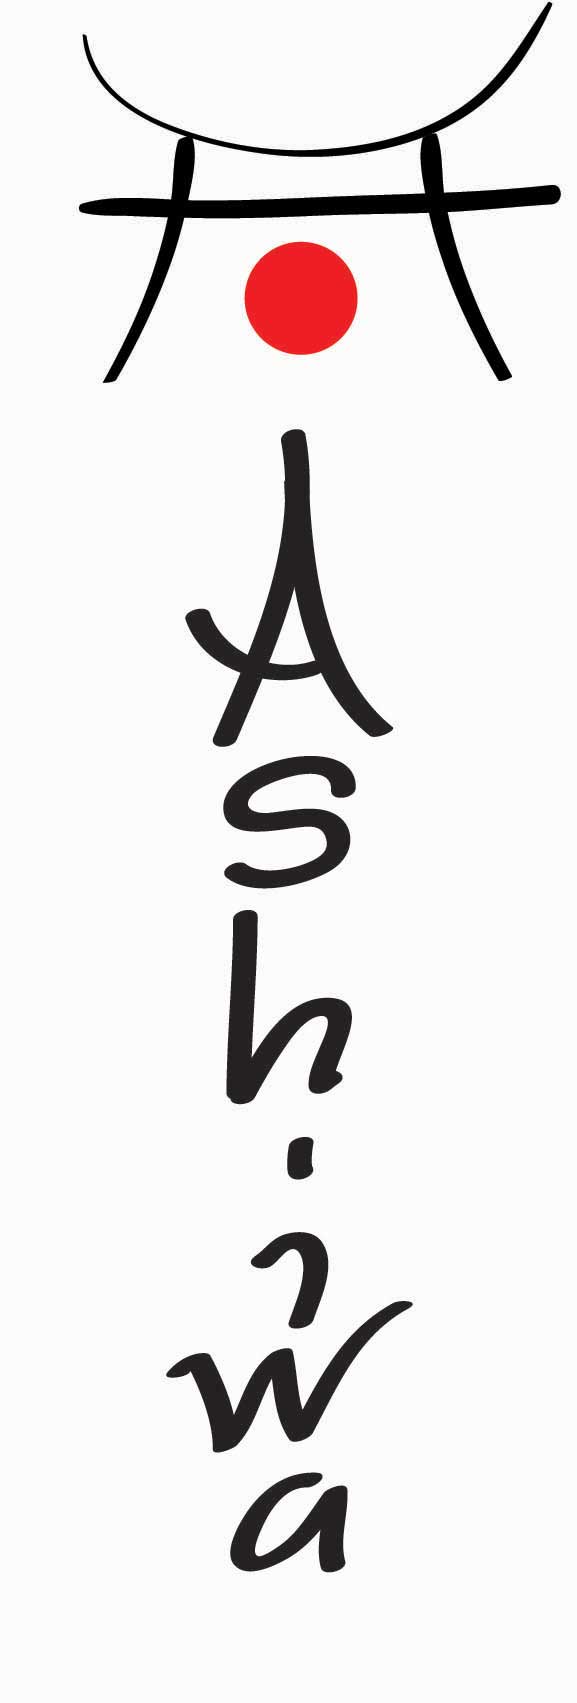 Lodrät Japansk logga Japanskt tecken i logotypen Ashiwa i Stockholm - design Hjälp med hemsidan